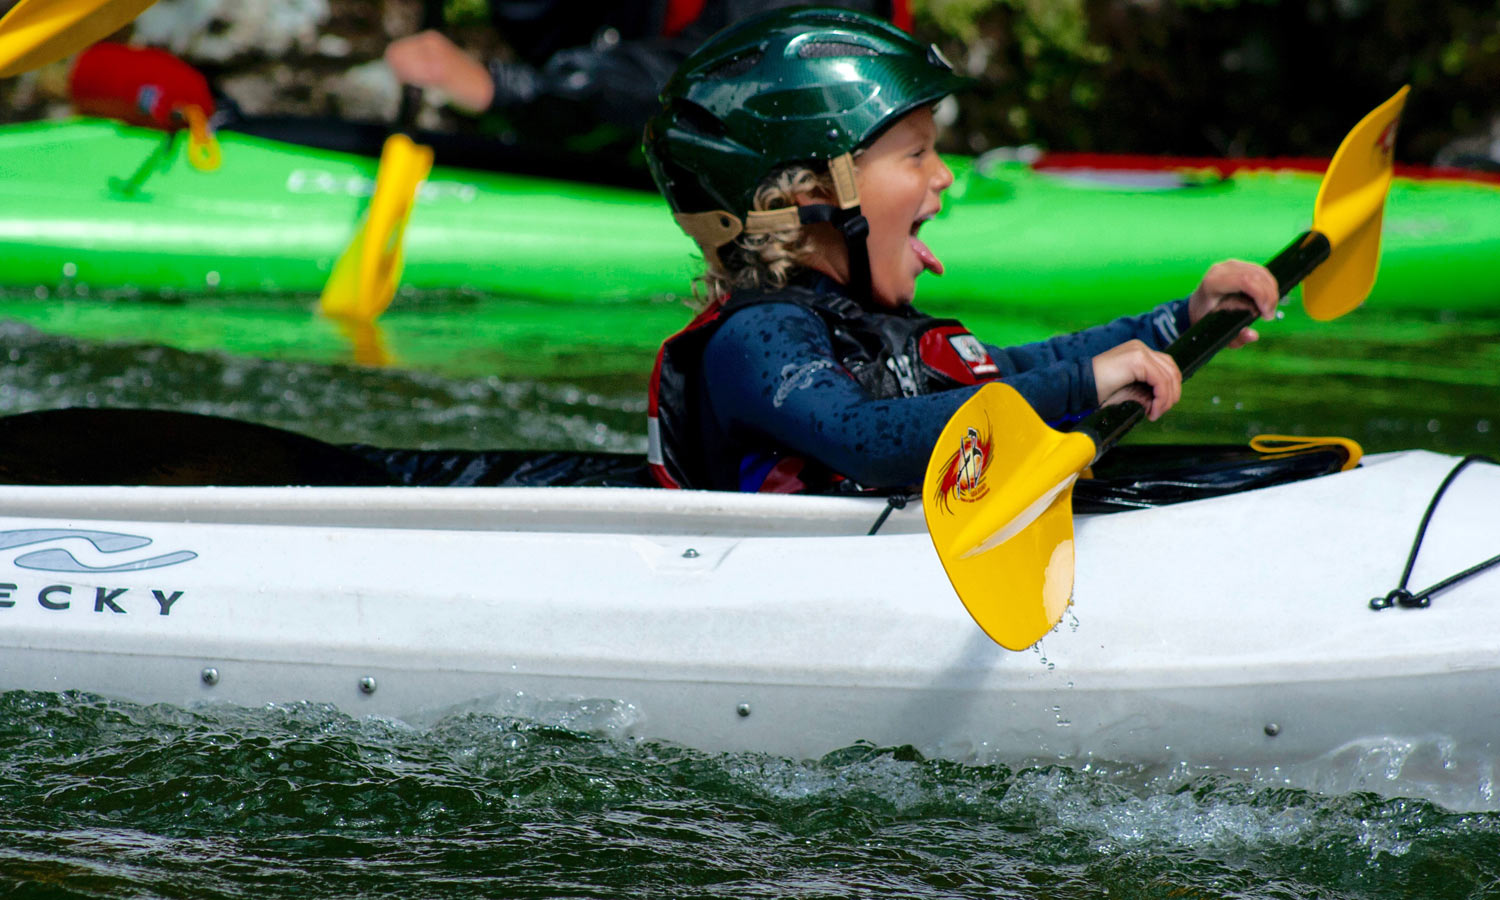 River Kayaking Little Girl